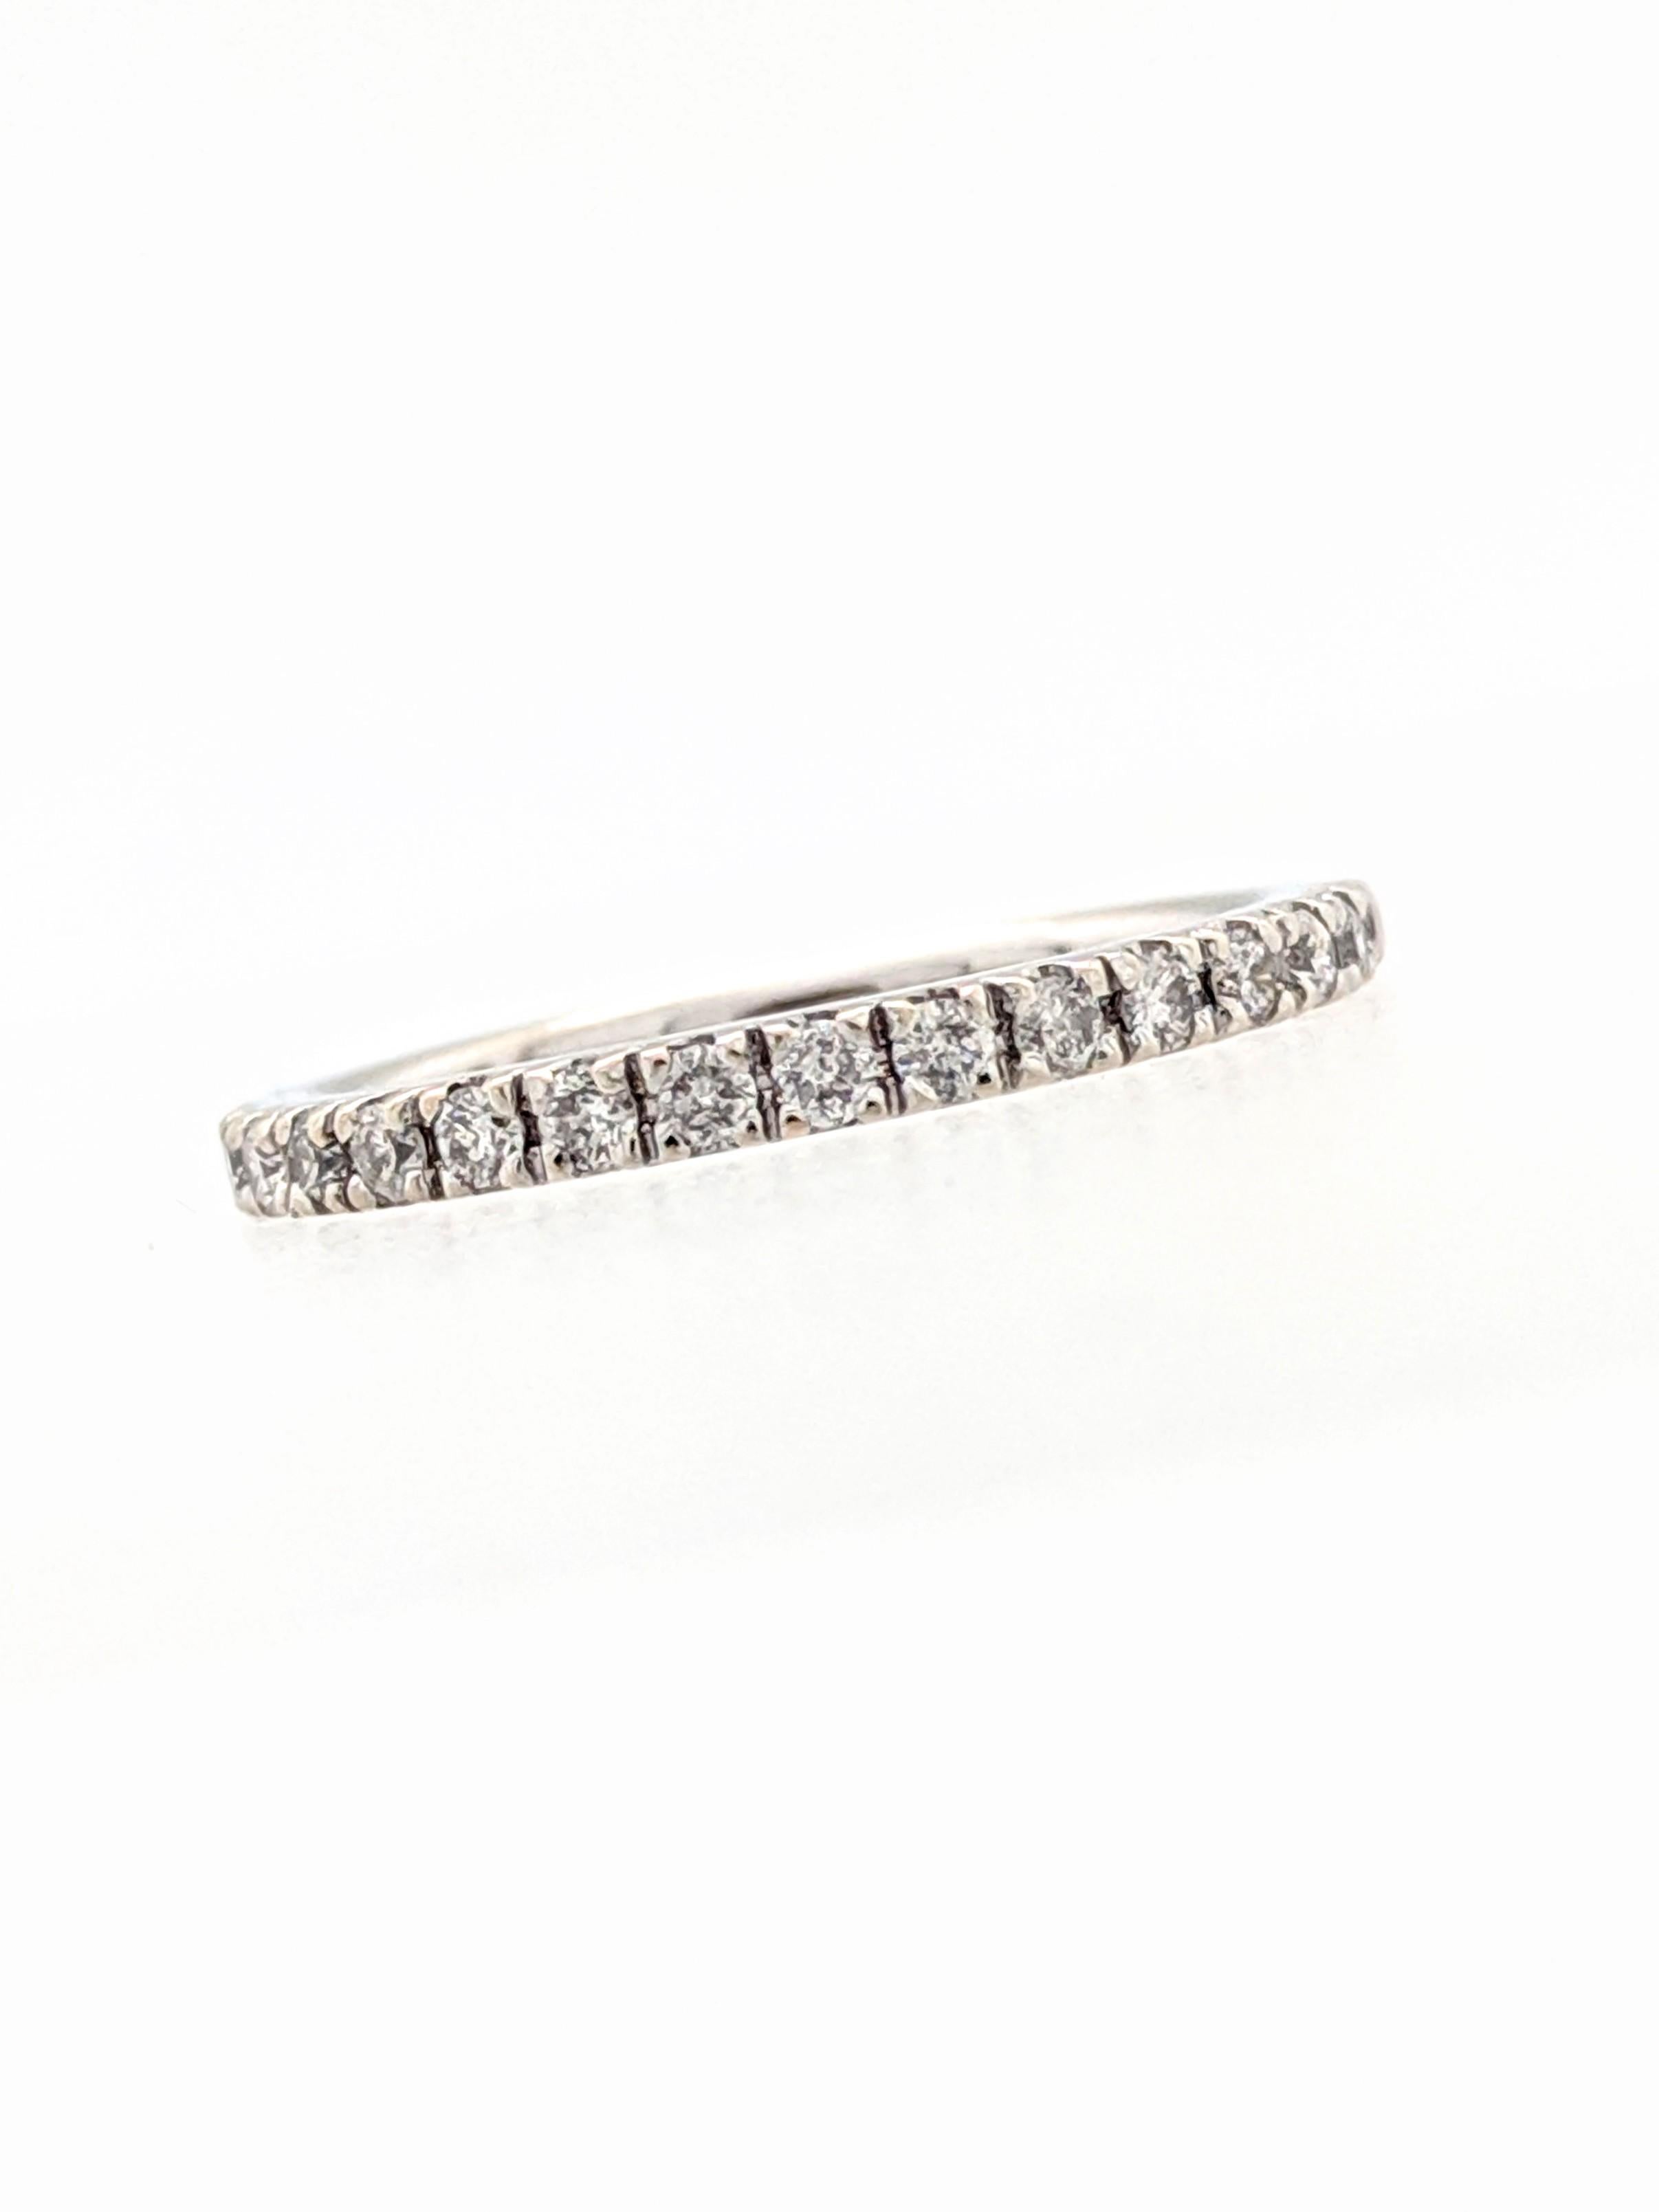 Women's or Men's 14 Karat White Gold .20 Carat Diamond Stackable Anniversary Wedding Band Ring